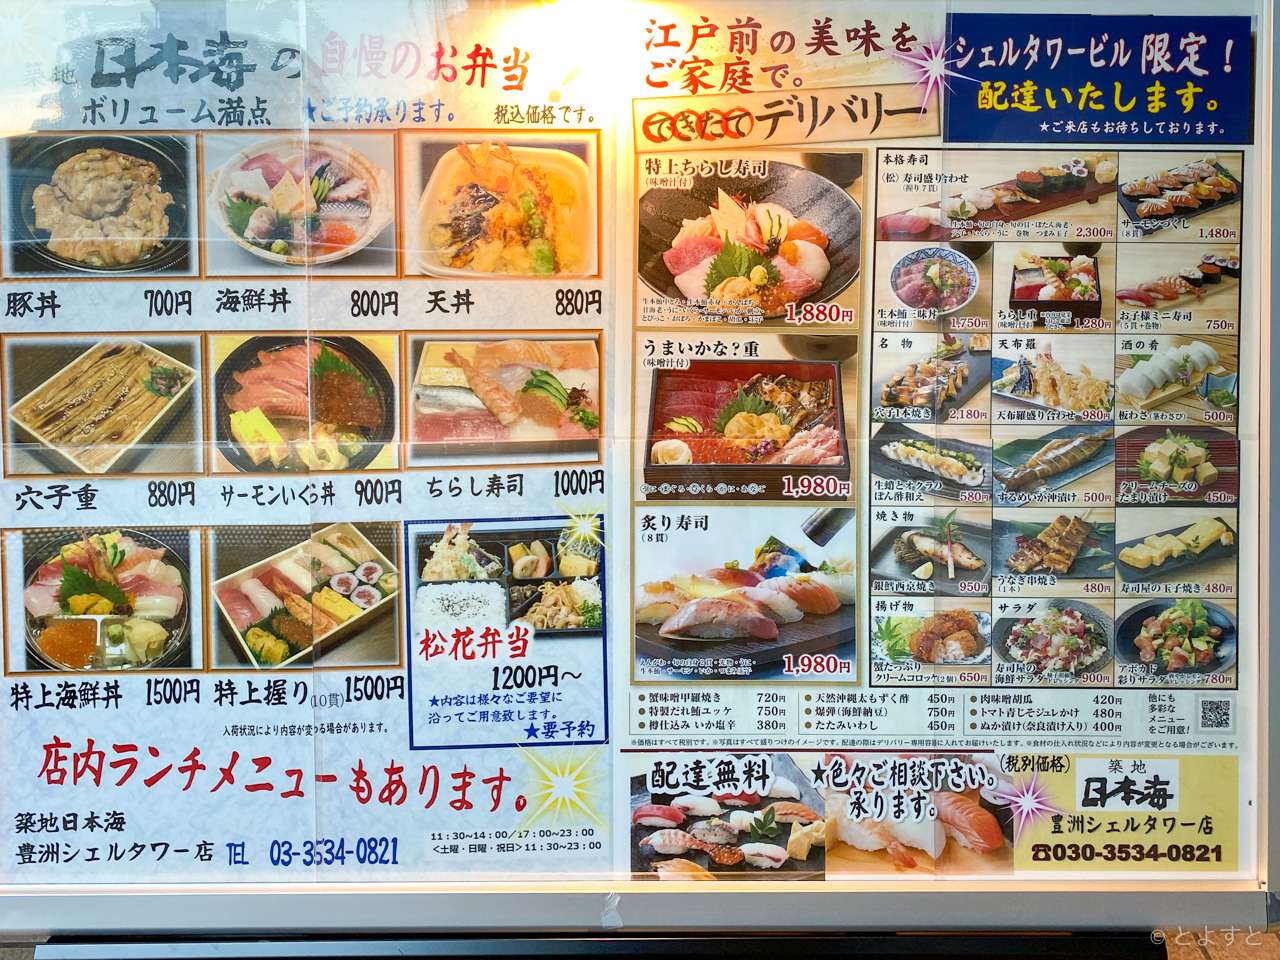 豊洲 築地日本海 800円のランチ海鮮丼はメニュー写真よりも実物の豪華さに歓喜 とよすと